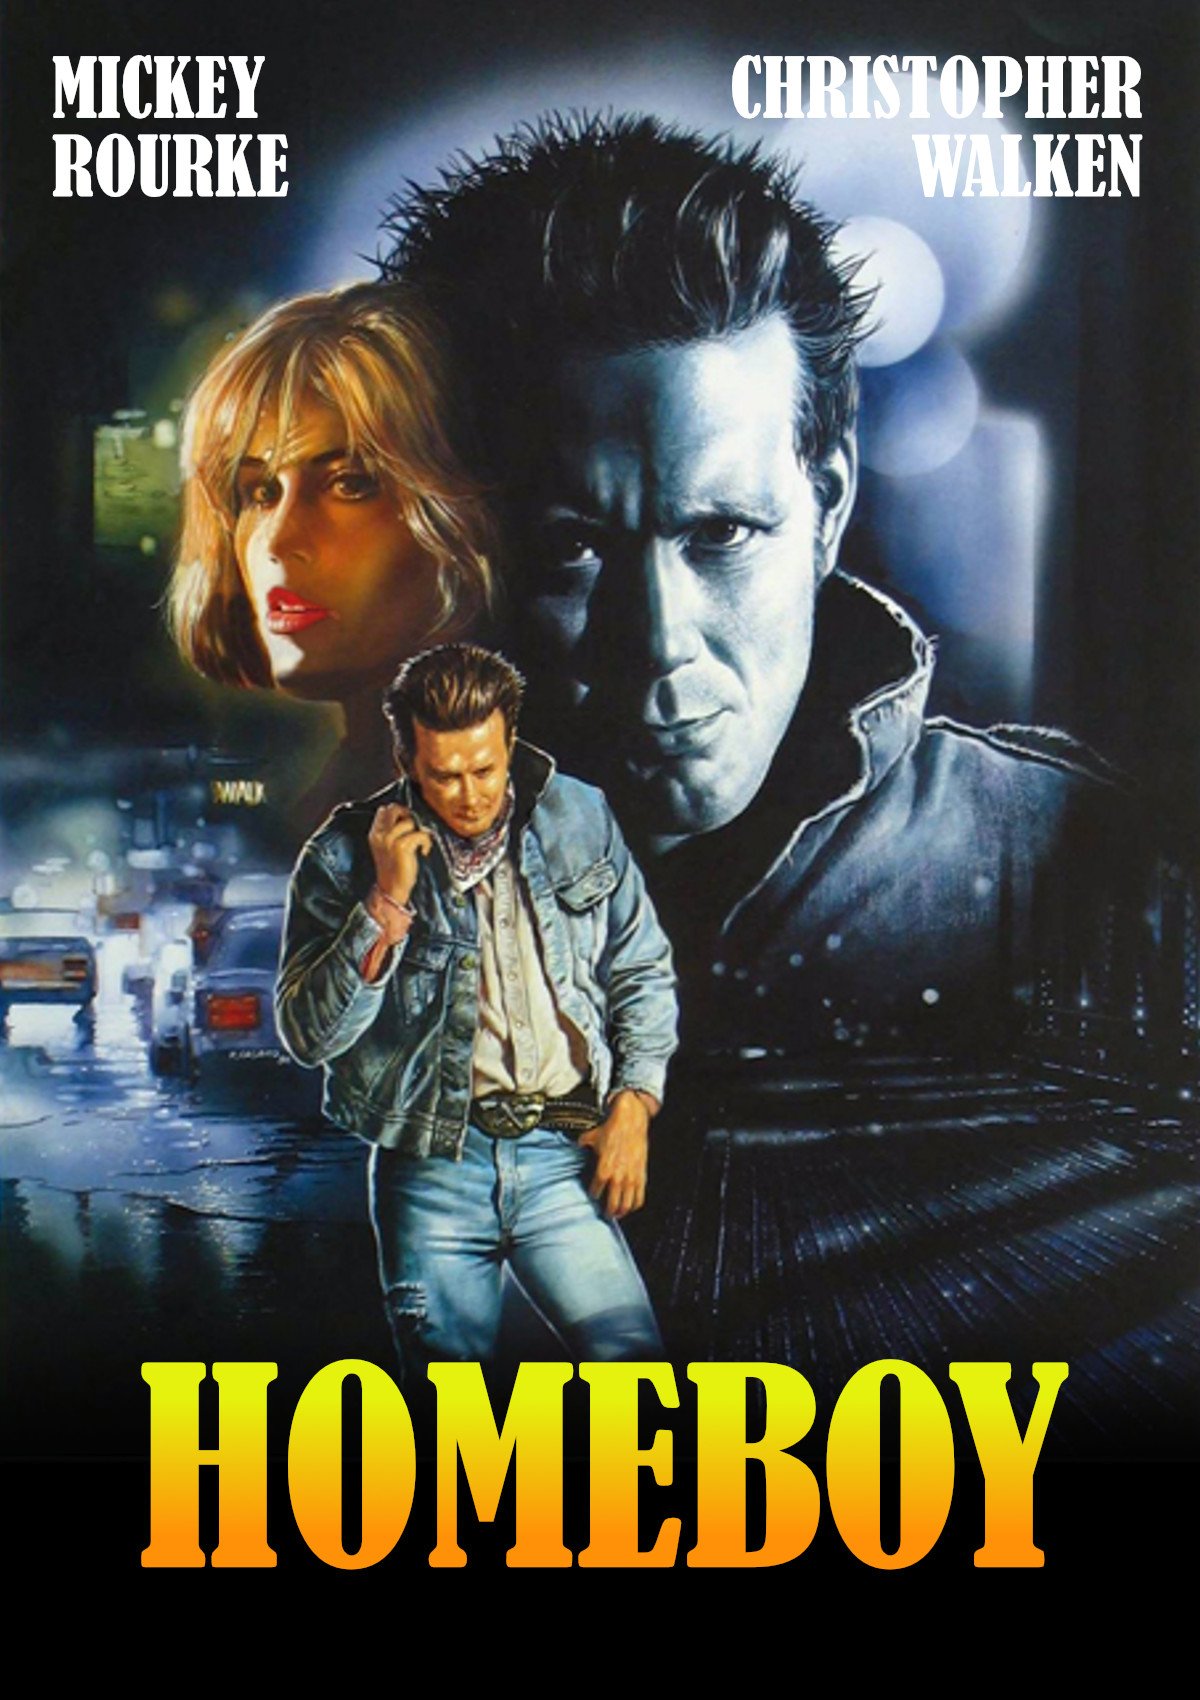 Homeboy  (1988)
Happy Birthday, Mickey Rourke! 